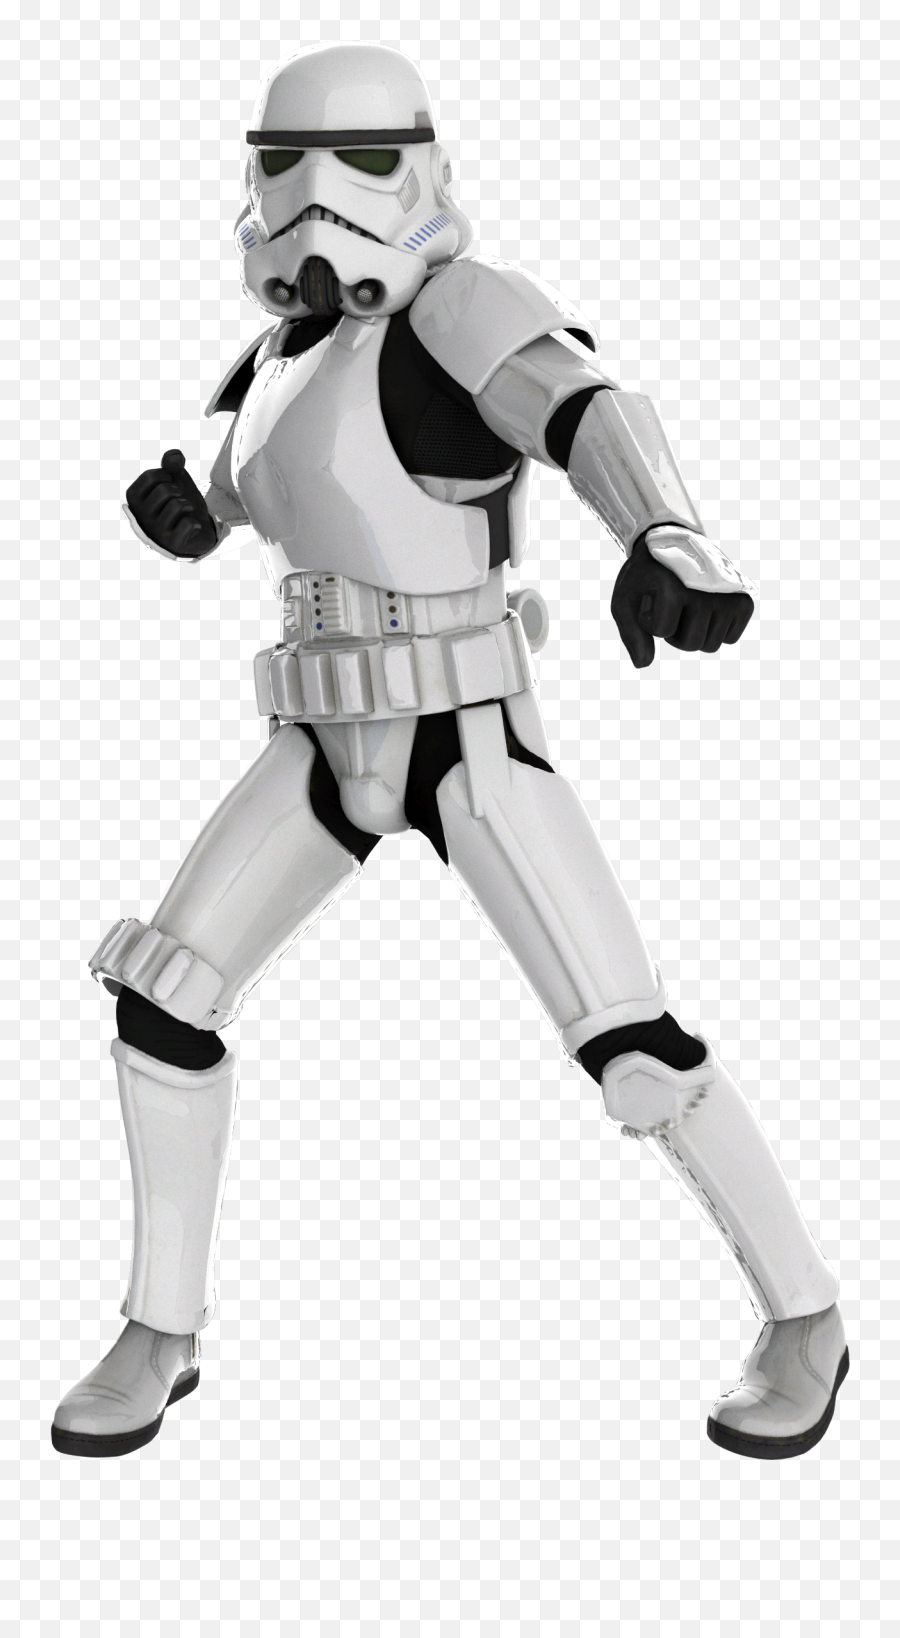 Stormtrooper Render - Figurine Png,Fortnite Transparent Background